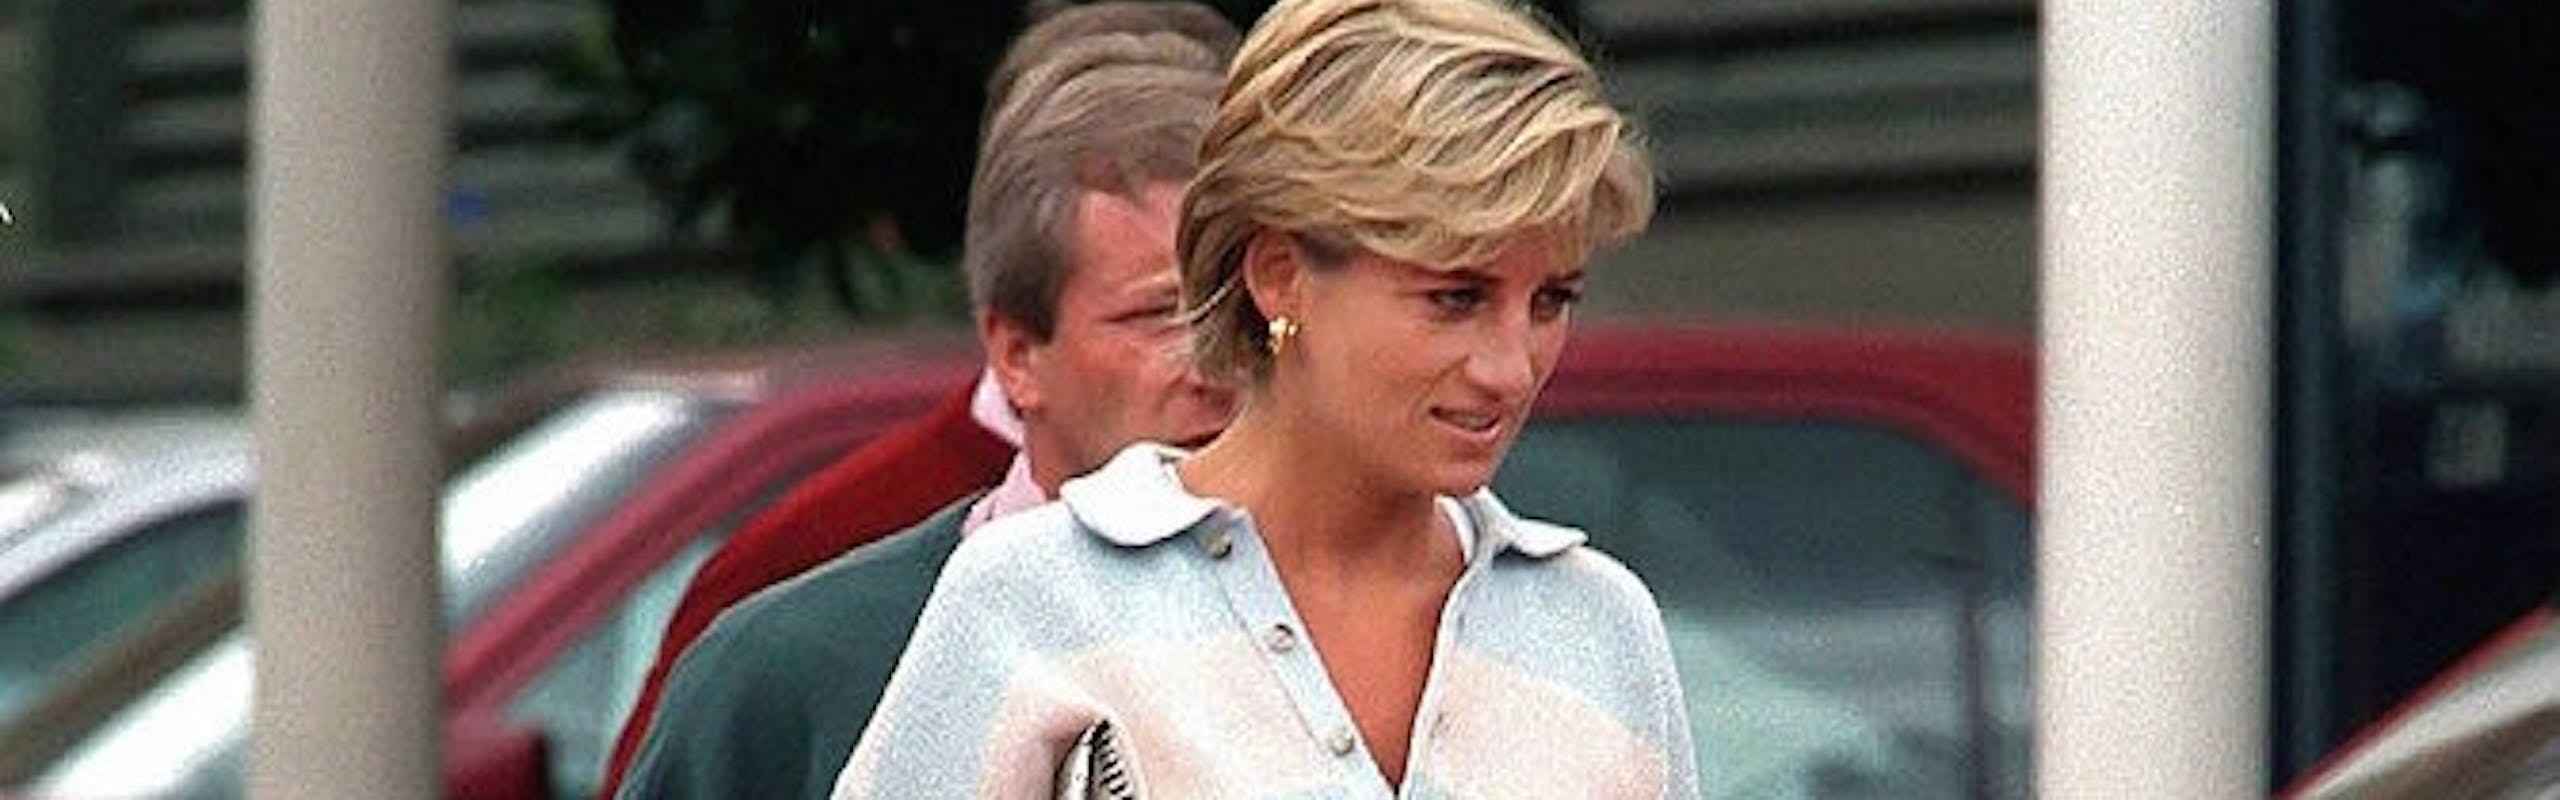 Lady Diana poco tempo prima dell'incidente, nel 1997.